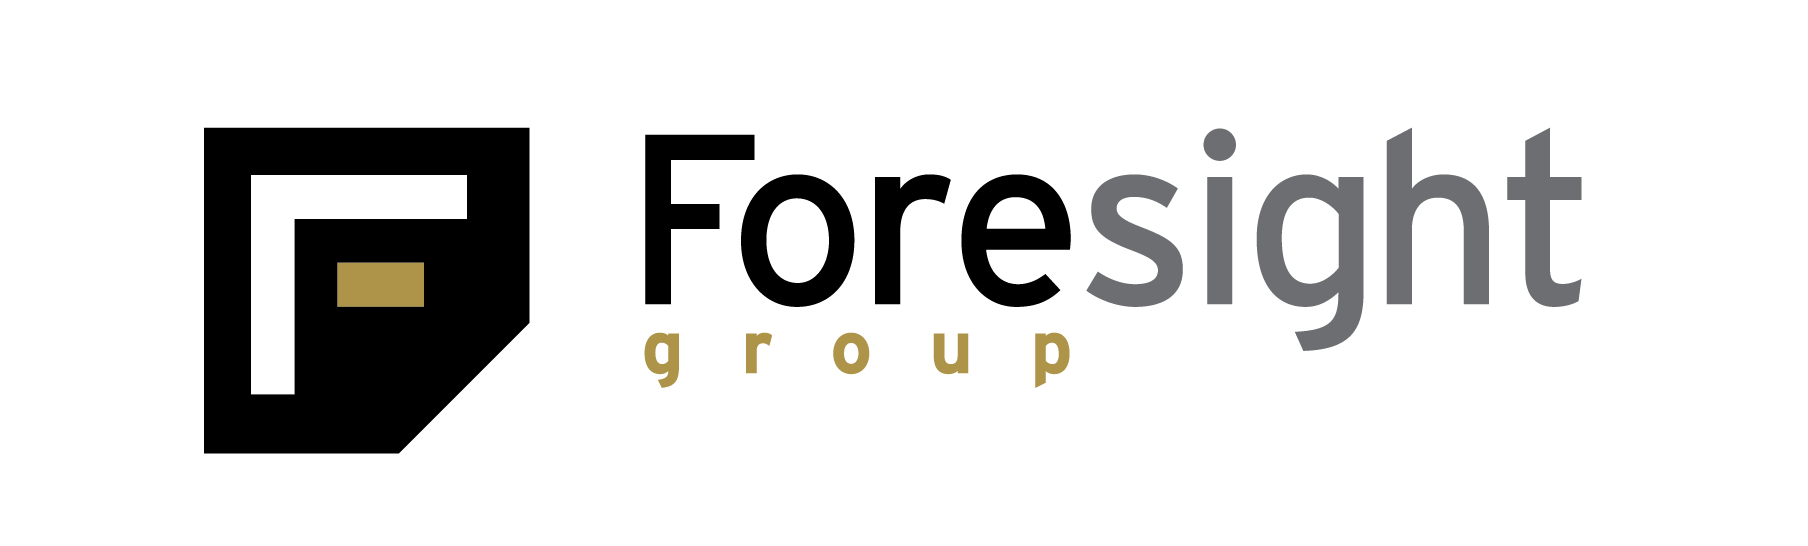 Foresight Logo - Foresight Group - British Business Bank British Business Bank